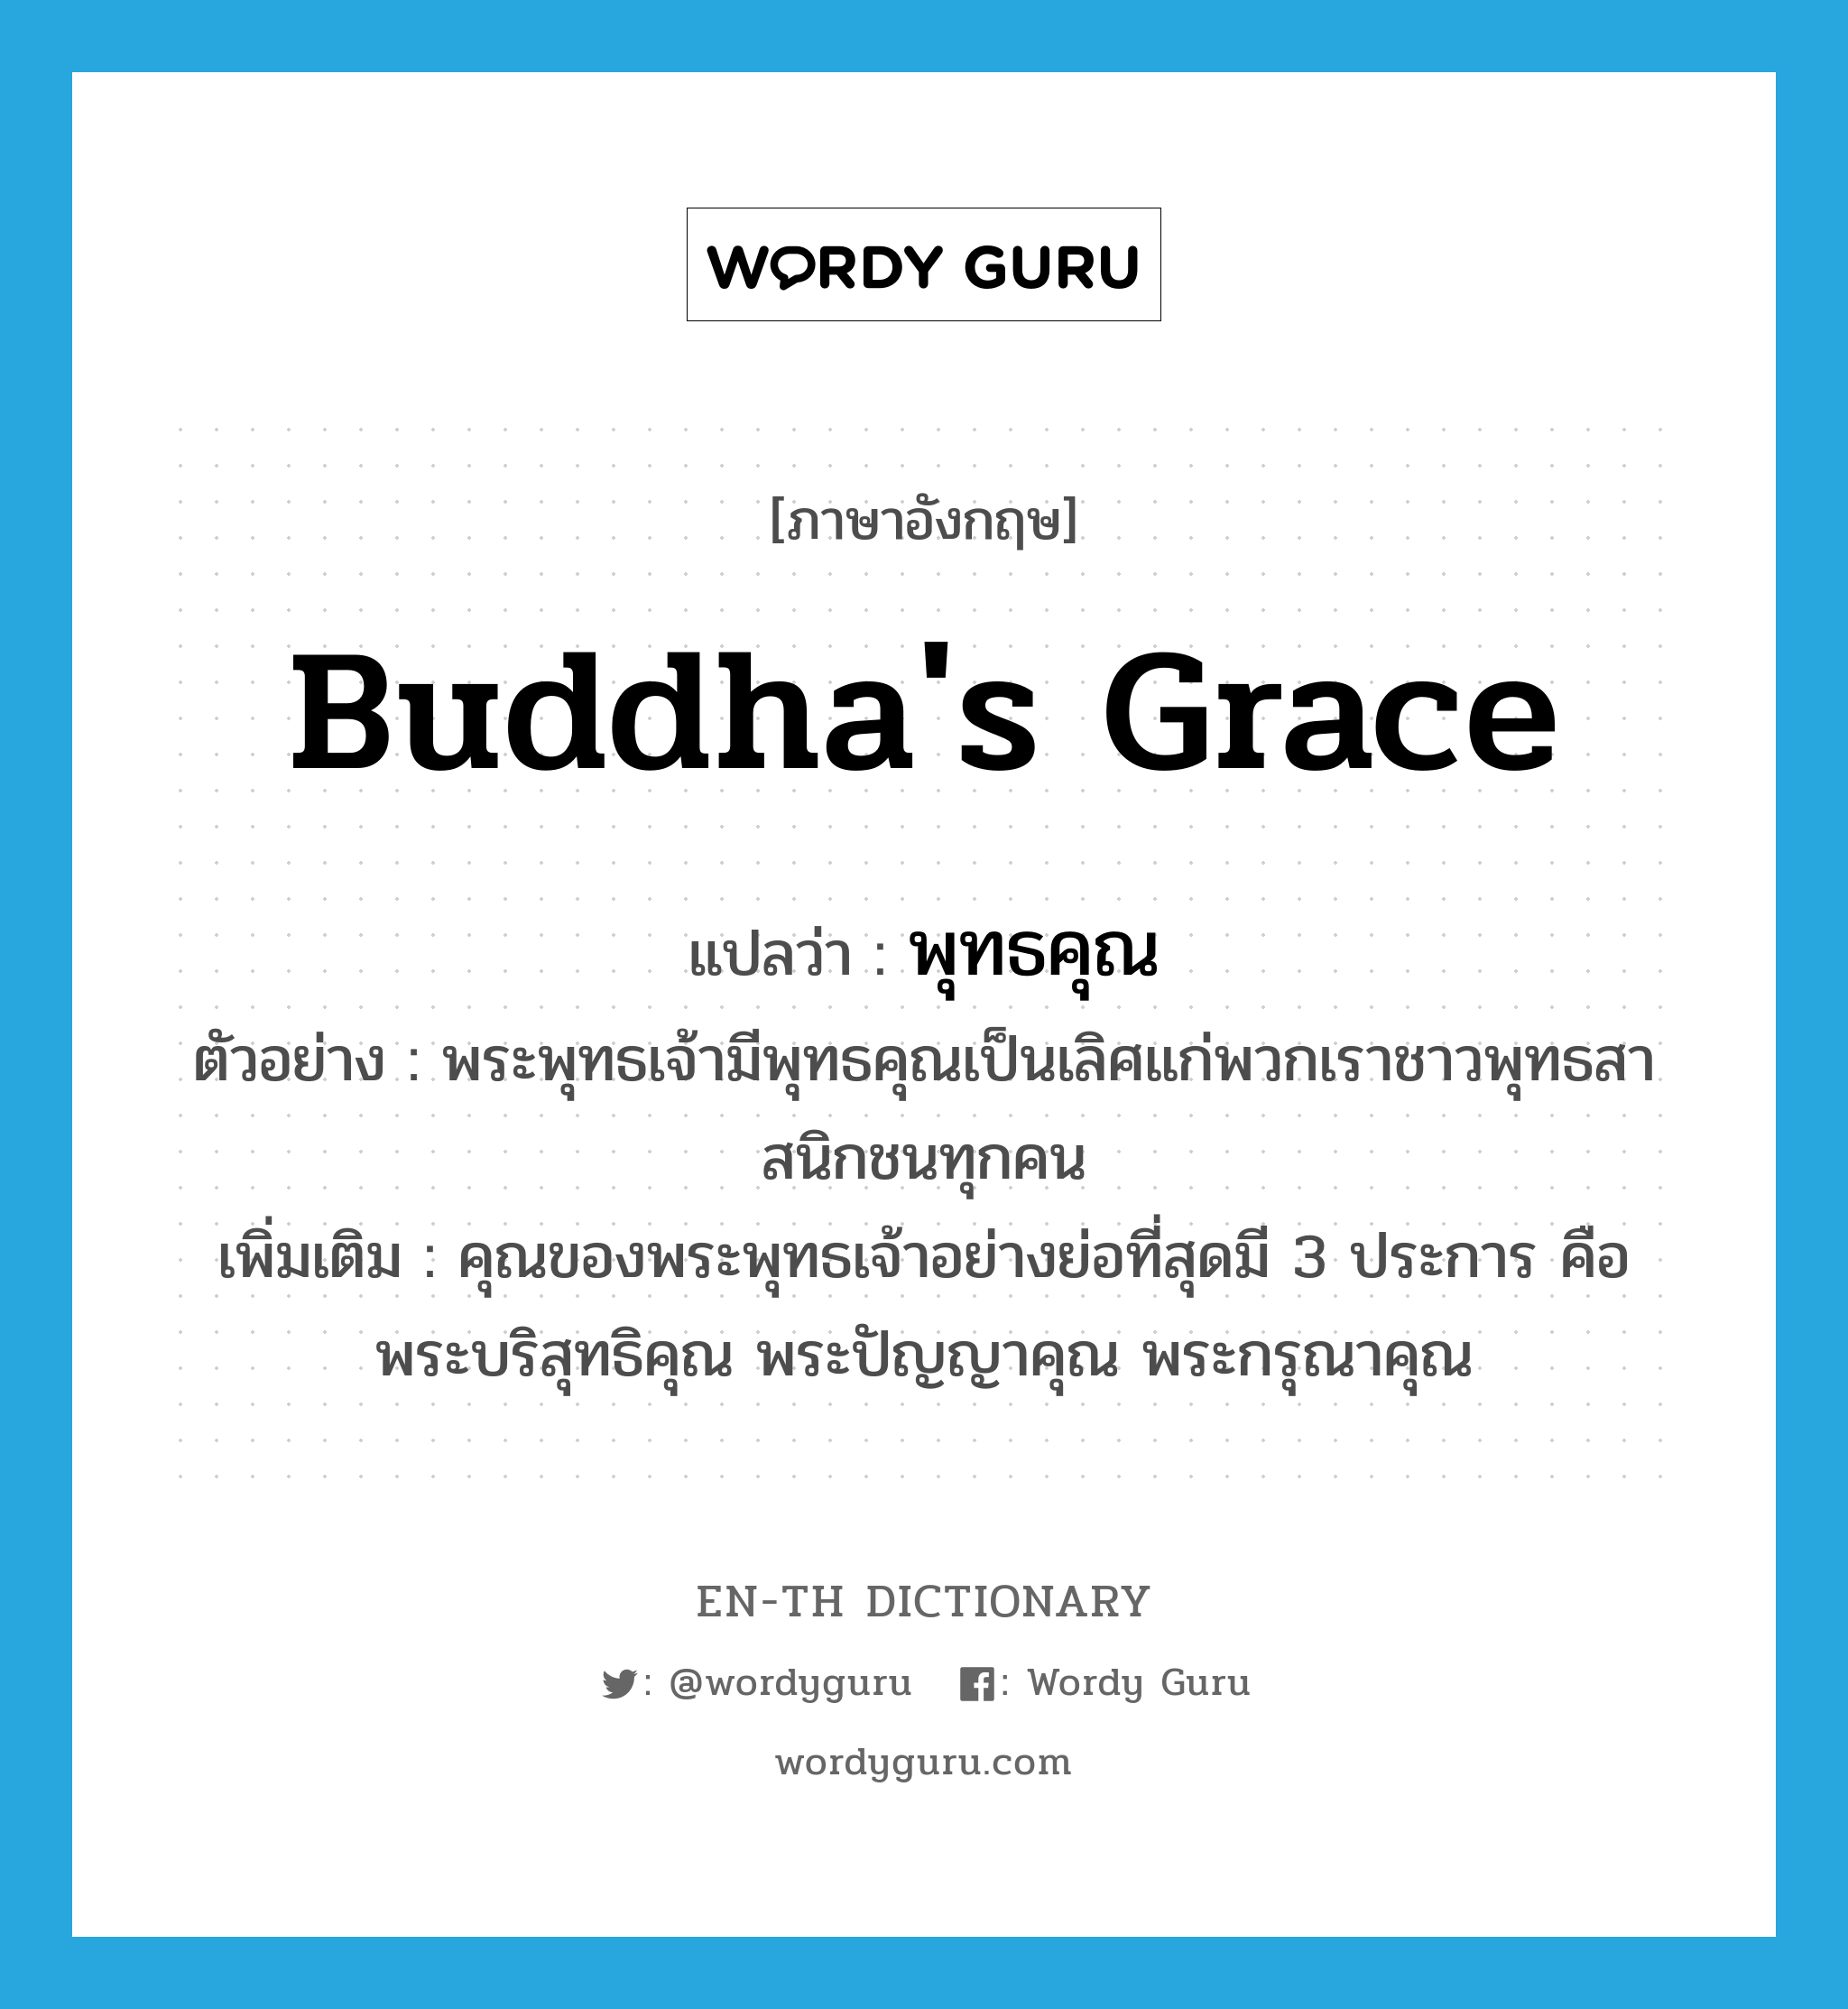 Buddha's grace แปลว่า?, คำศัพท์ภาษาอังกฤษ Buddha's grace แปลว่า พุทธคุณ ประเภท N ตัวอย่าง พระพุทธเจ้ามีพุทธคุณเป็นเลิศแก่พวกเราชาวพุทธสาสนิกชนทุกคน เพิ่มเติม คุณของพระพุทธเจ้าอย่างย่อที่สุดมี 3 ประการ คือ พระบริสุทธิคุณ พระปัญญาคุณ พระกรุณาคุณ หมวด N